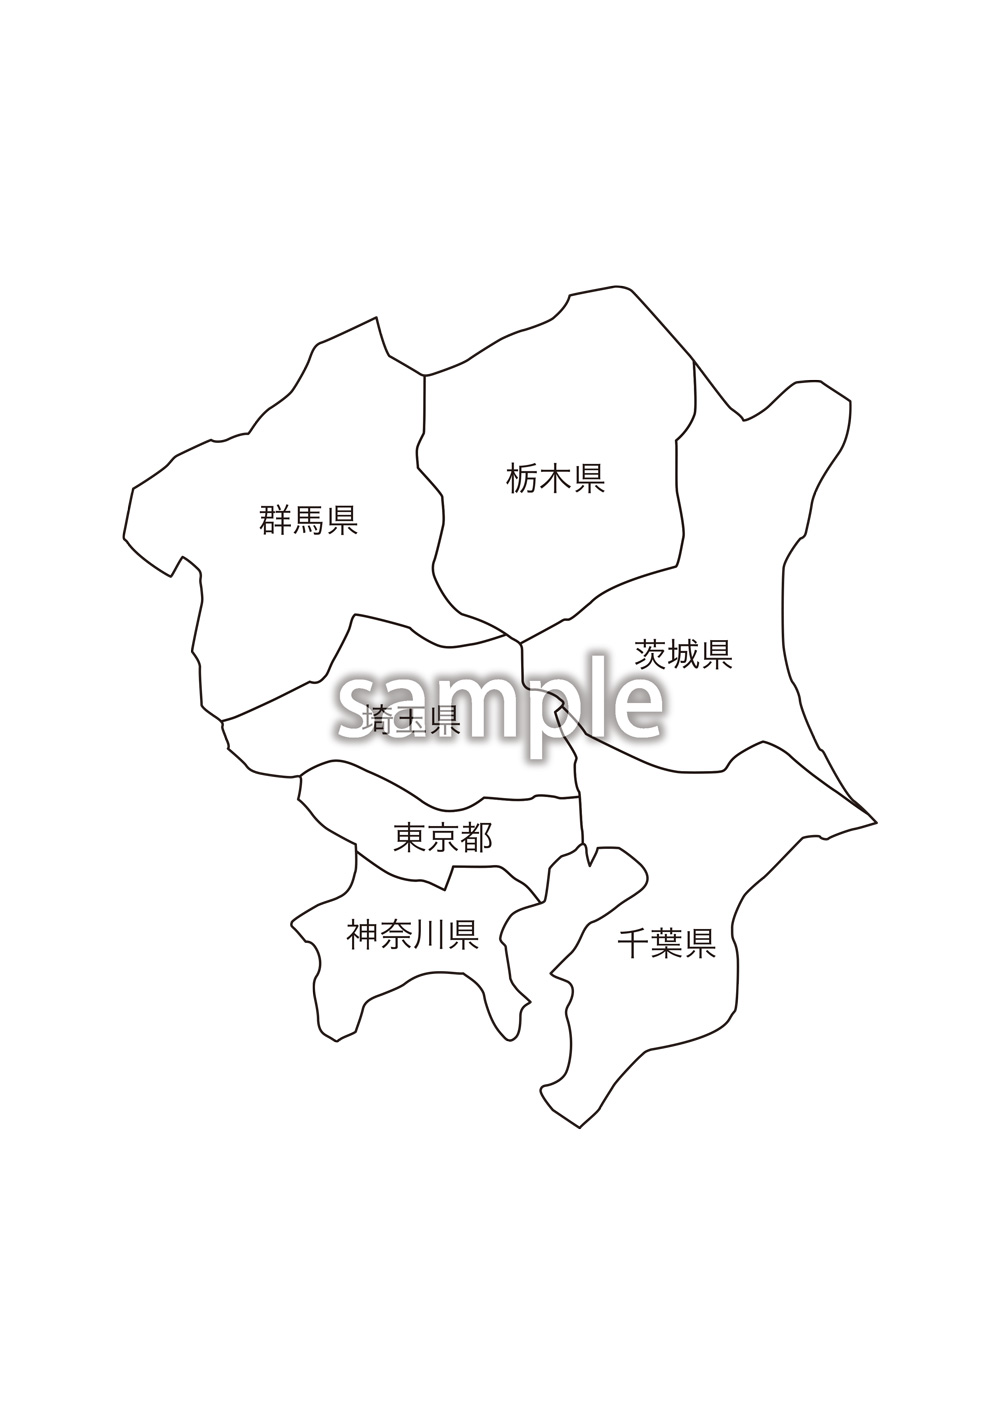 関東地方都道府県名入り地図